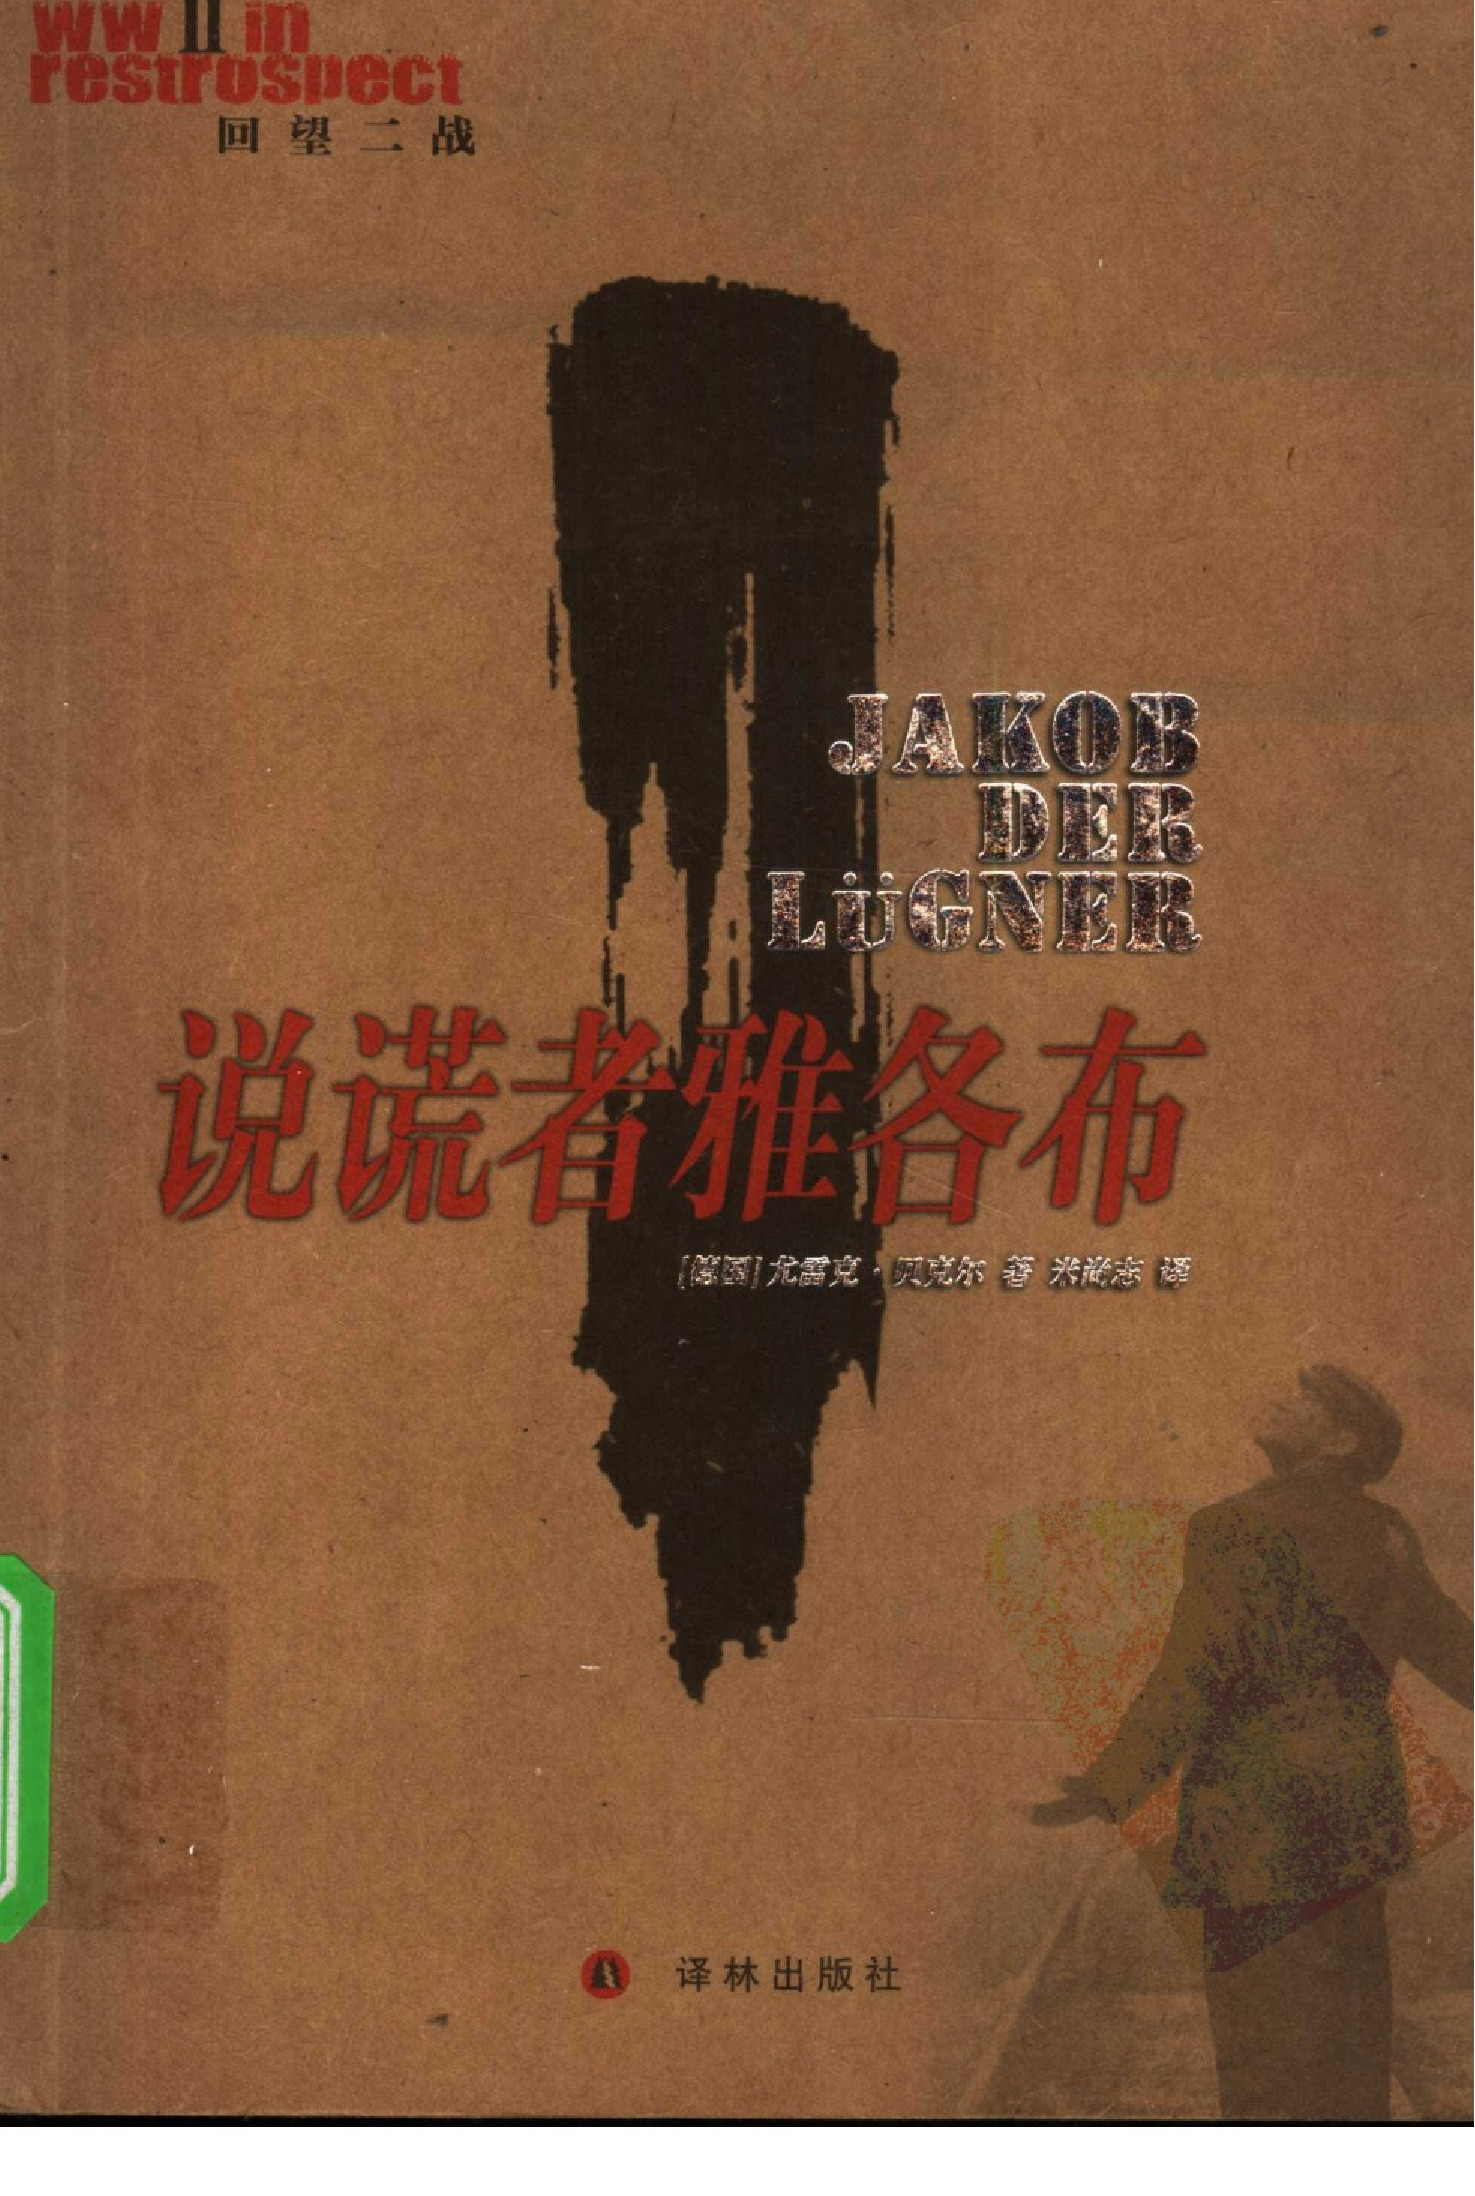 说谎者雅各布[德]贝克尔.米尚志译.译林出版社(2005)